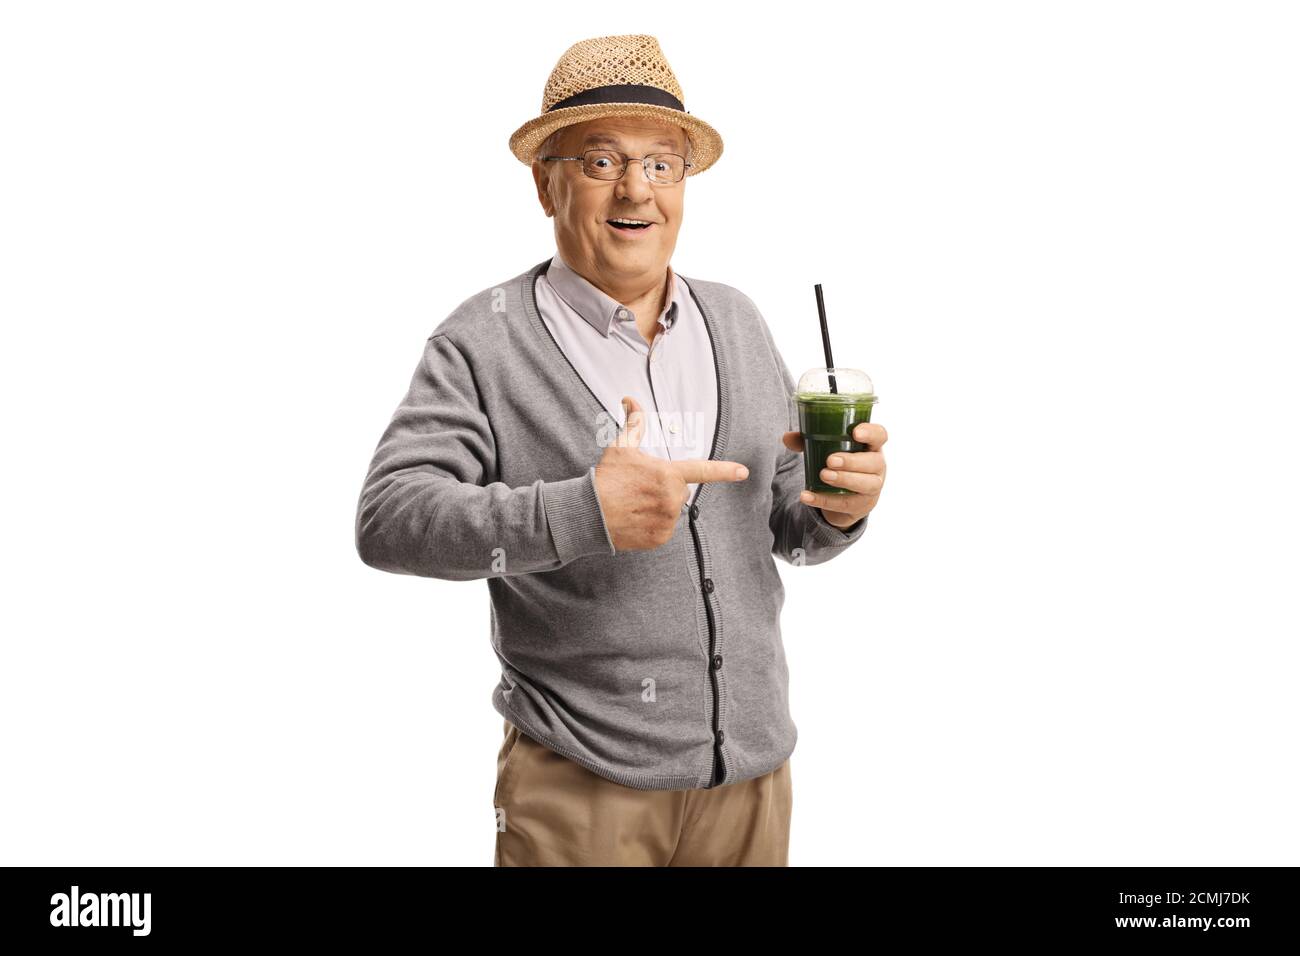 Älterer Mann hält einen grünen Smoothie in einem Plastikbecher Und zeigt isoliert auf weißem Hintergrund Stockfoto